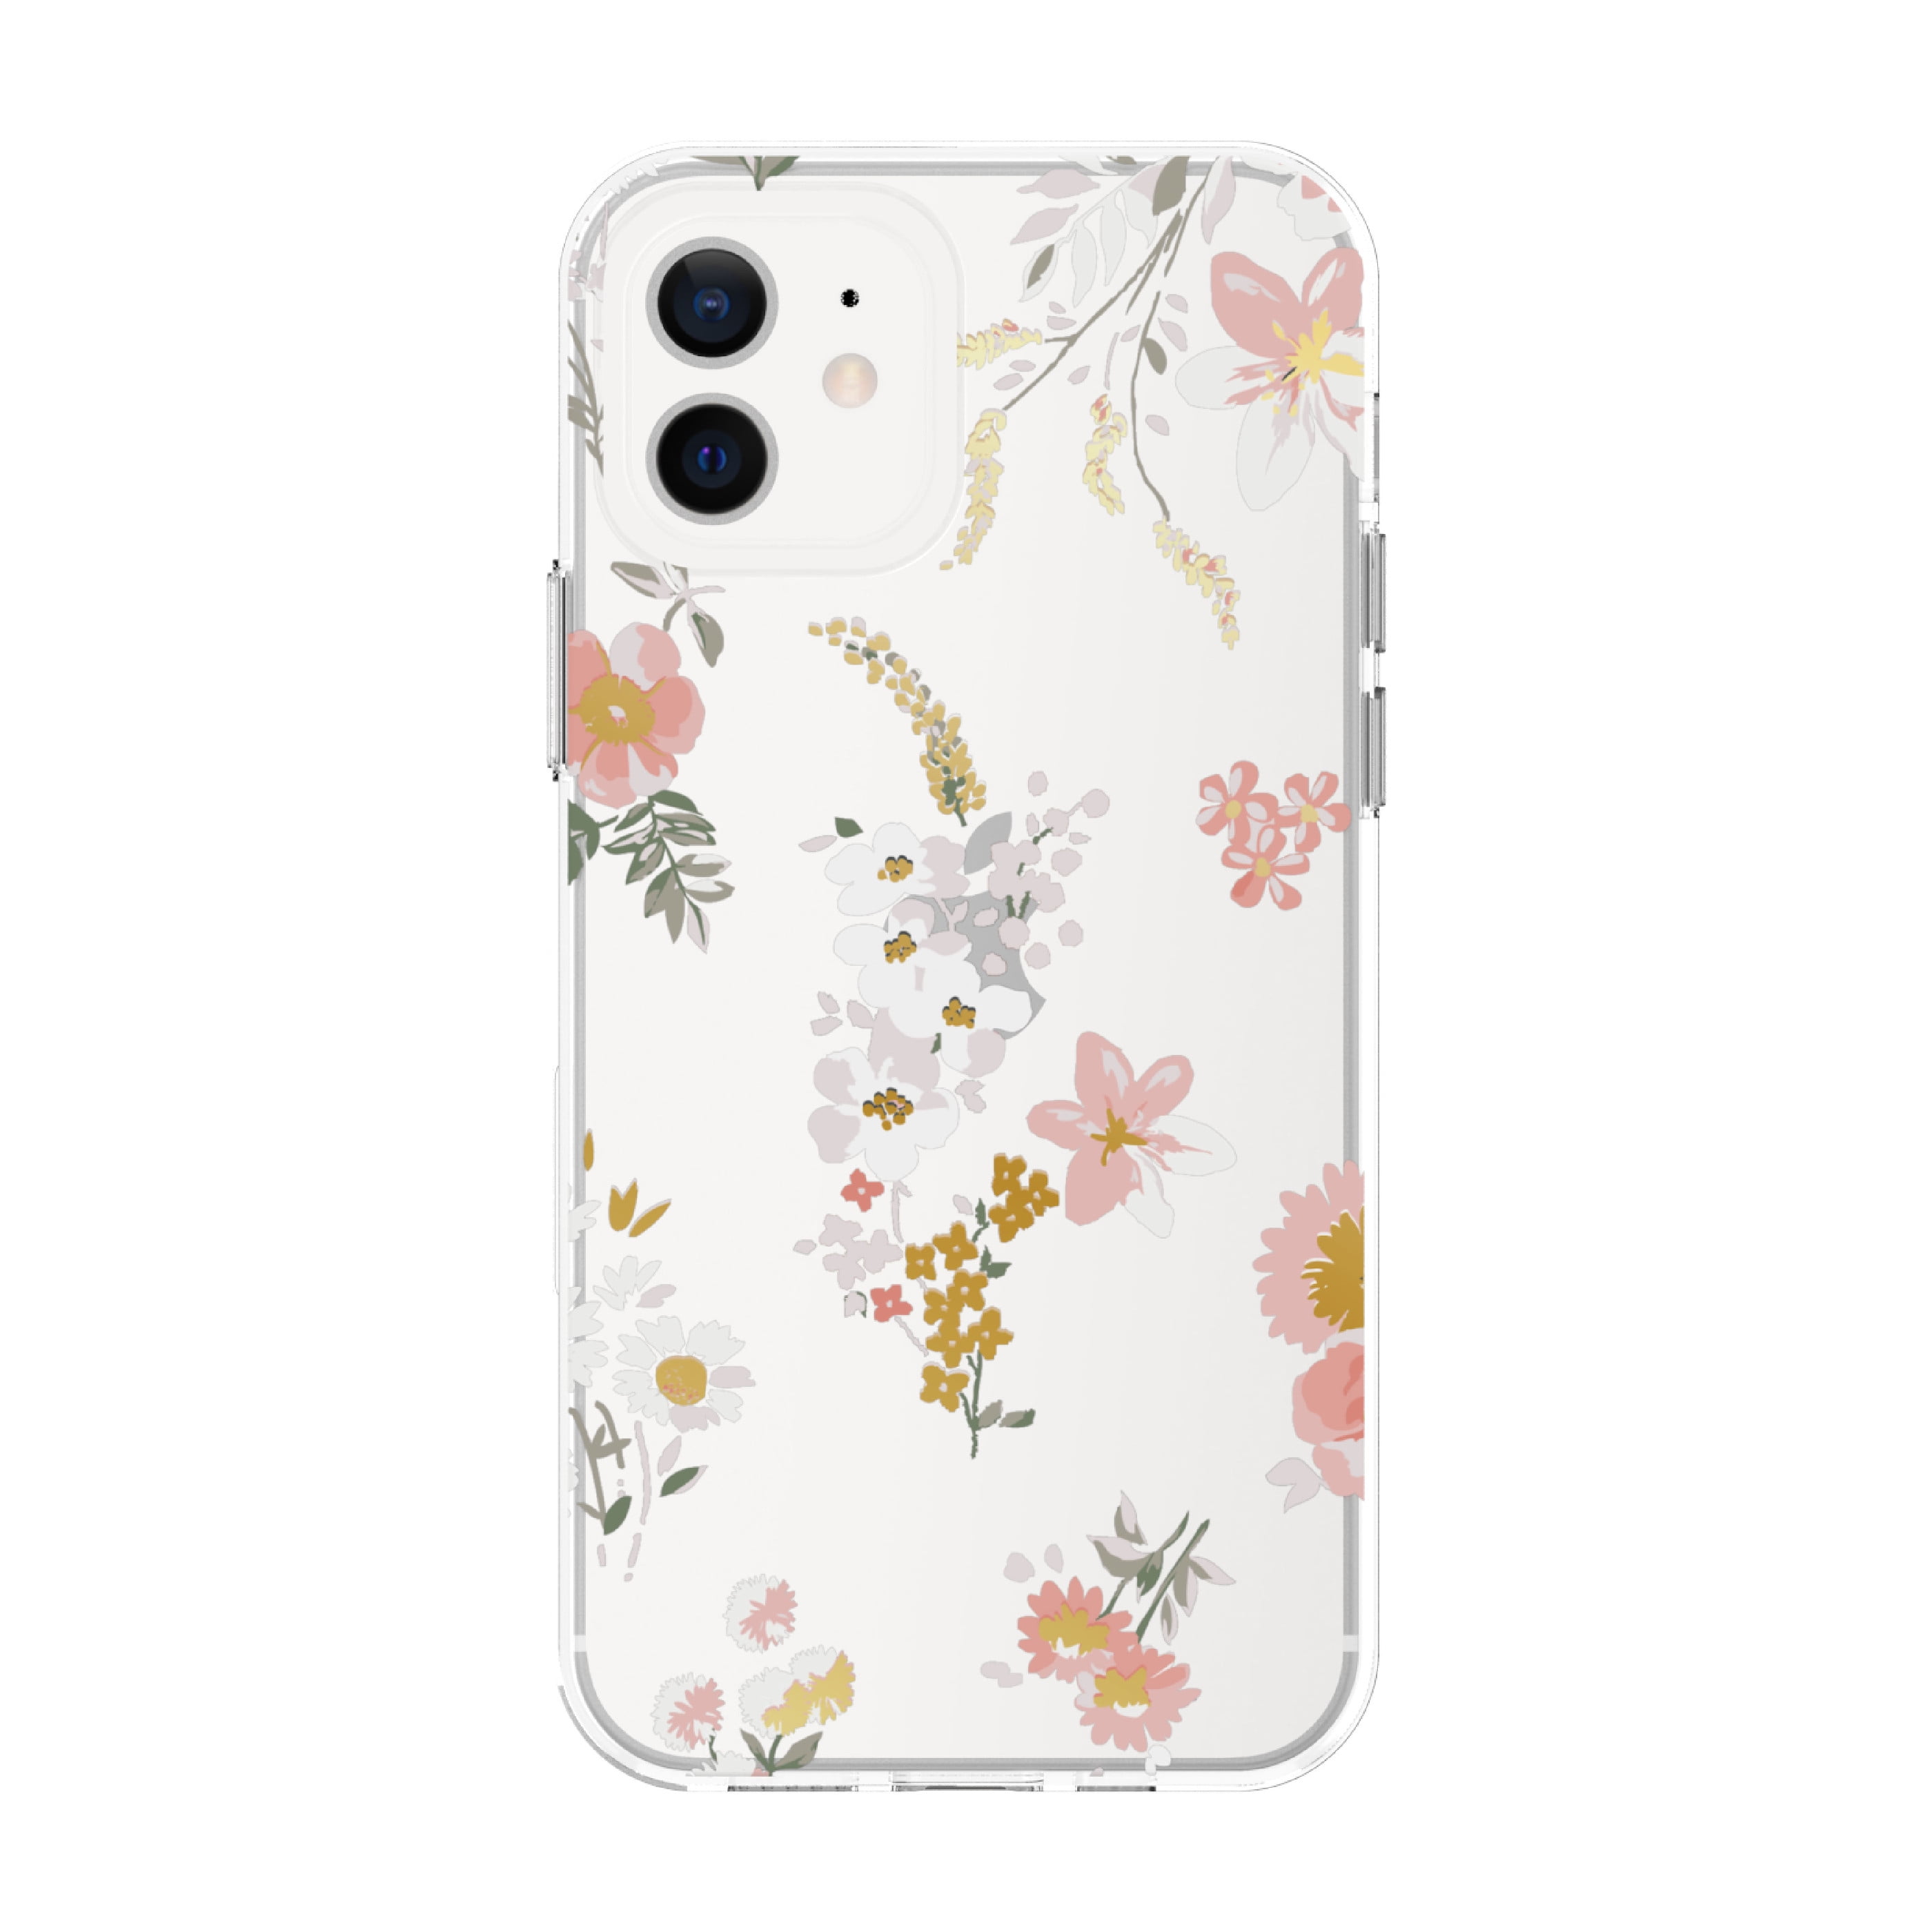 onn. Fashion Phone Case for iPhone 12 Mini - Clear Floral - Walmart.com